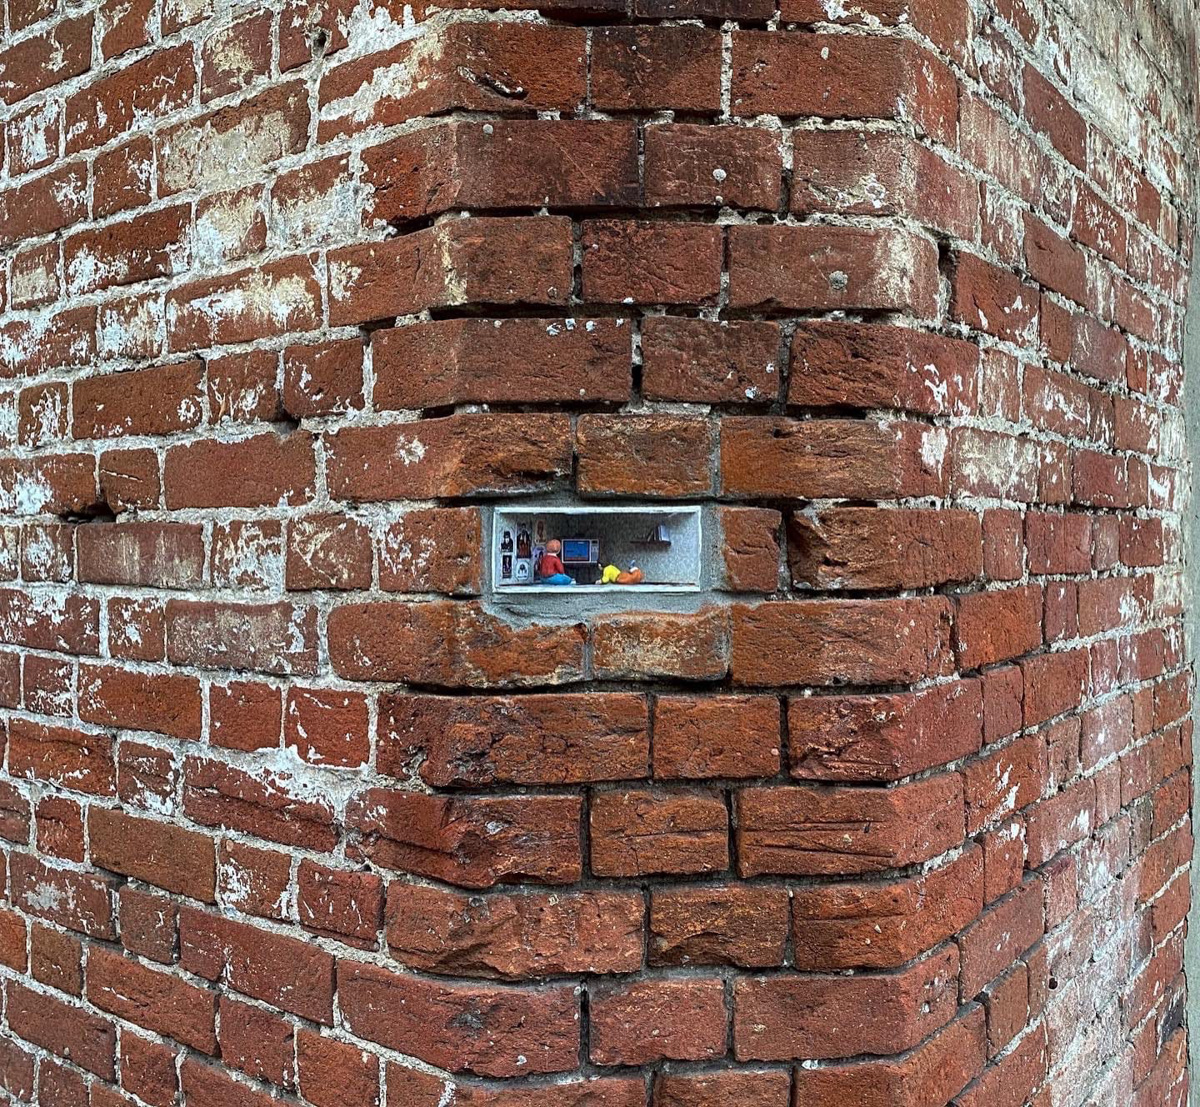 Уличные художники Владимира спрятали в кирпичной кладке новые инсталляции. Работы не просто заполняют пустоты в стене, но и погружают в удивительный мир. Пасхалки уже назвали «секретиками». А их поиски превратились в настоящий квест.